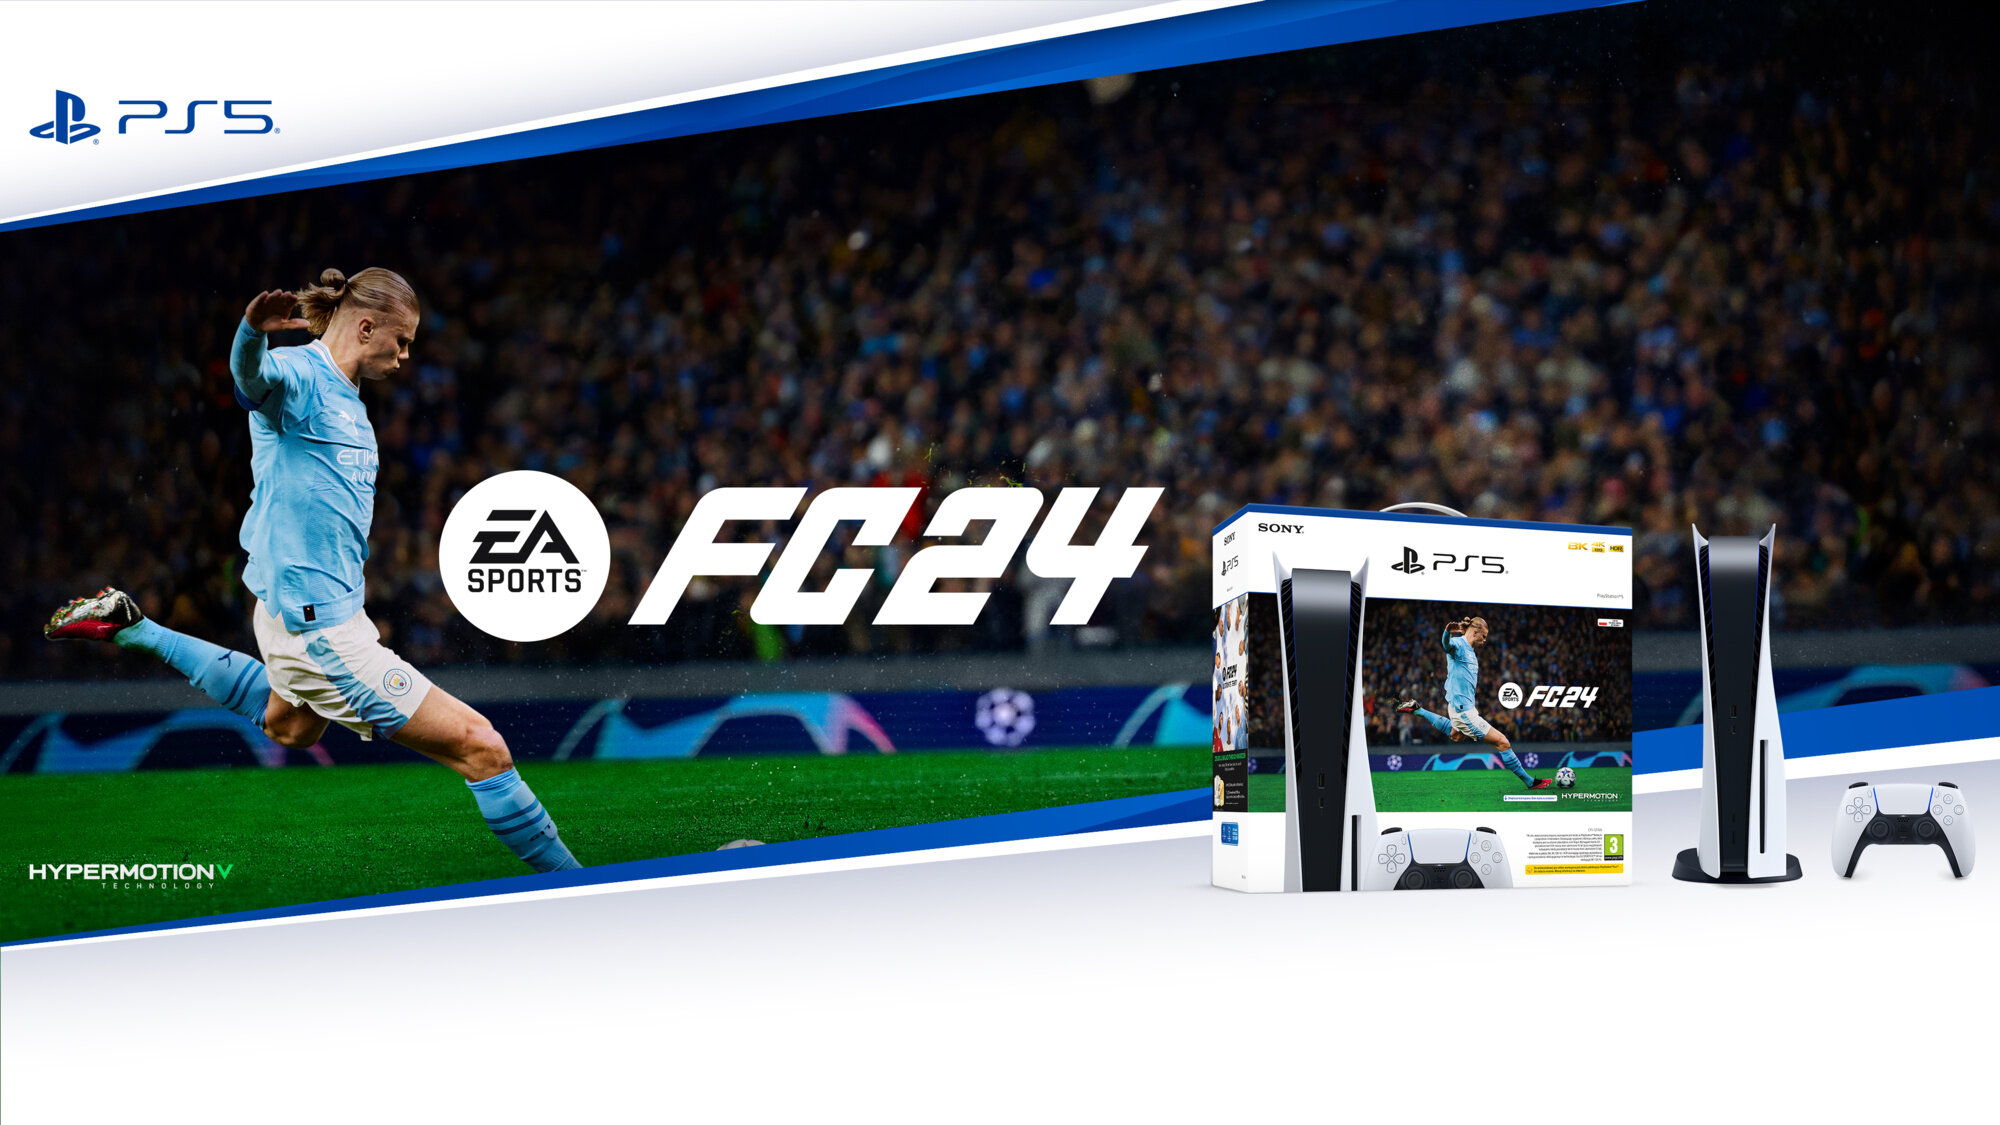 Pořiďte si PlayStation 5 s obrovskou slevou a získejte navíc EA SPORTS FC 24 zdarma